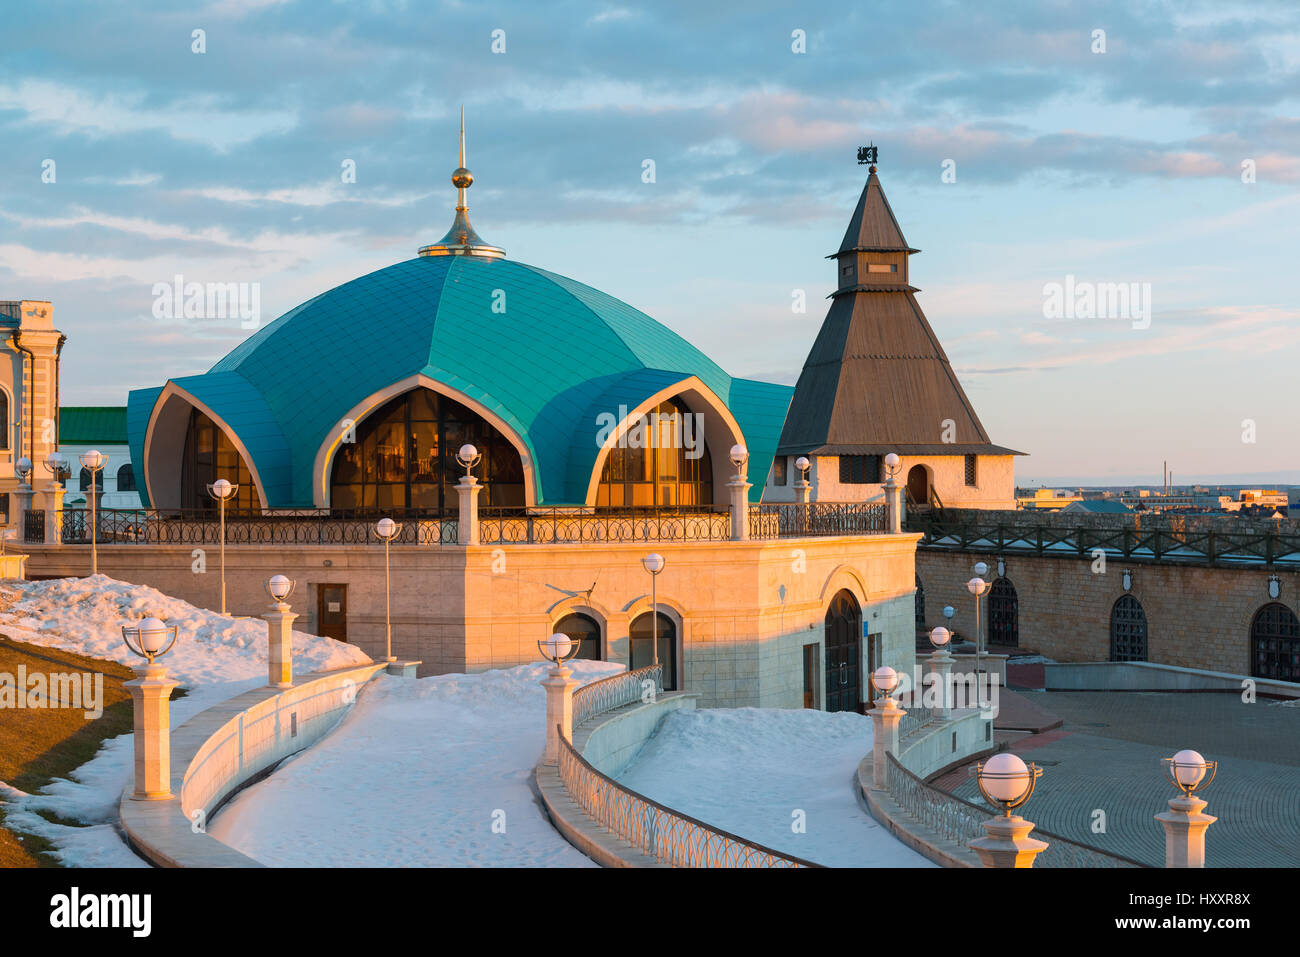 Service pavilion on territory of Kazan Kremlin in Tatarstan, Russia Stock Photo